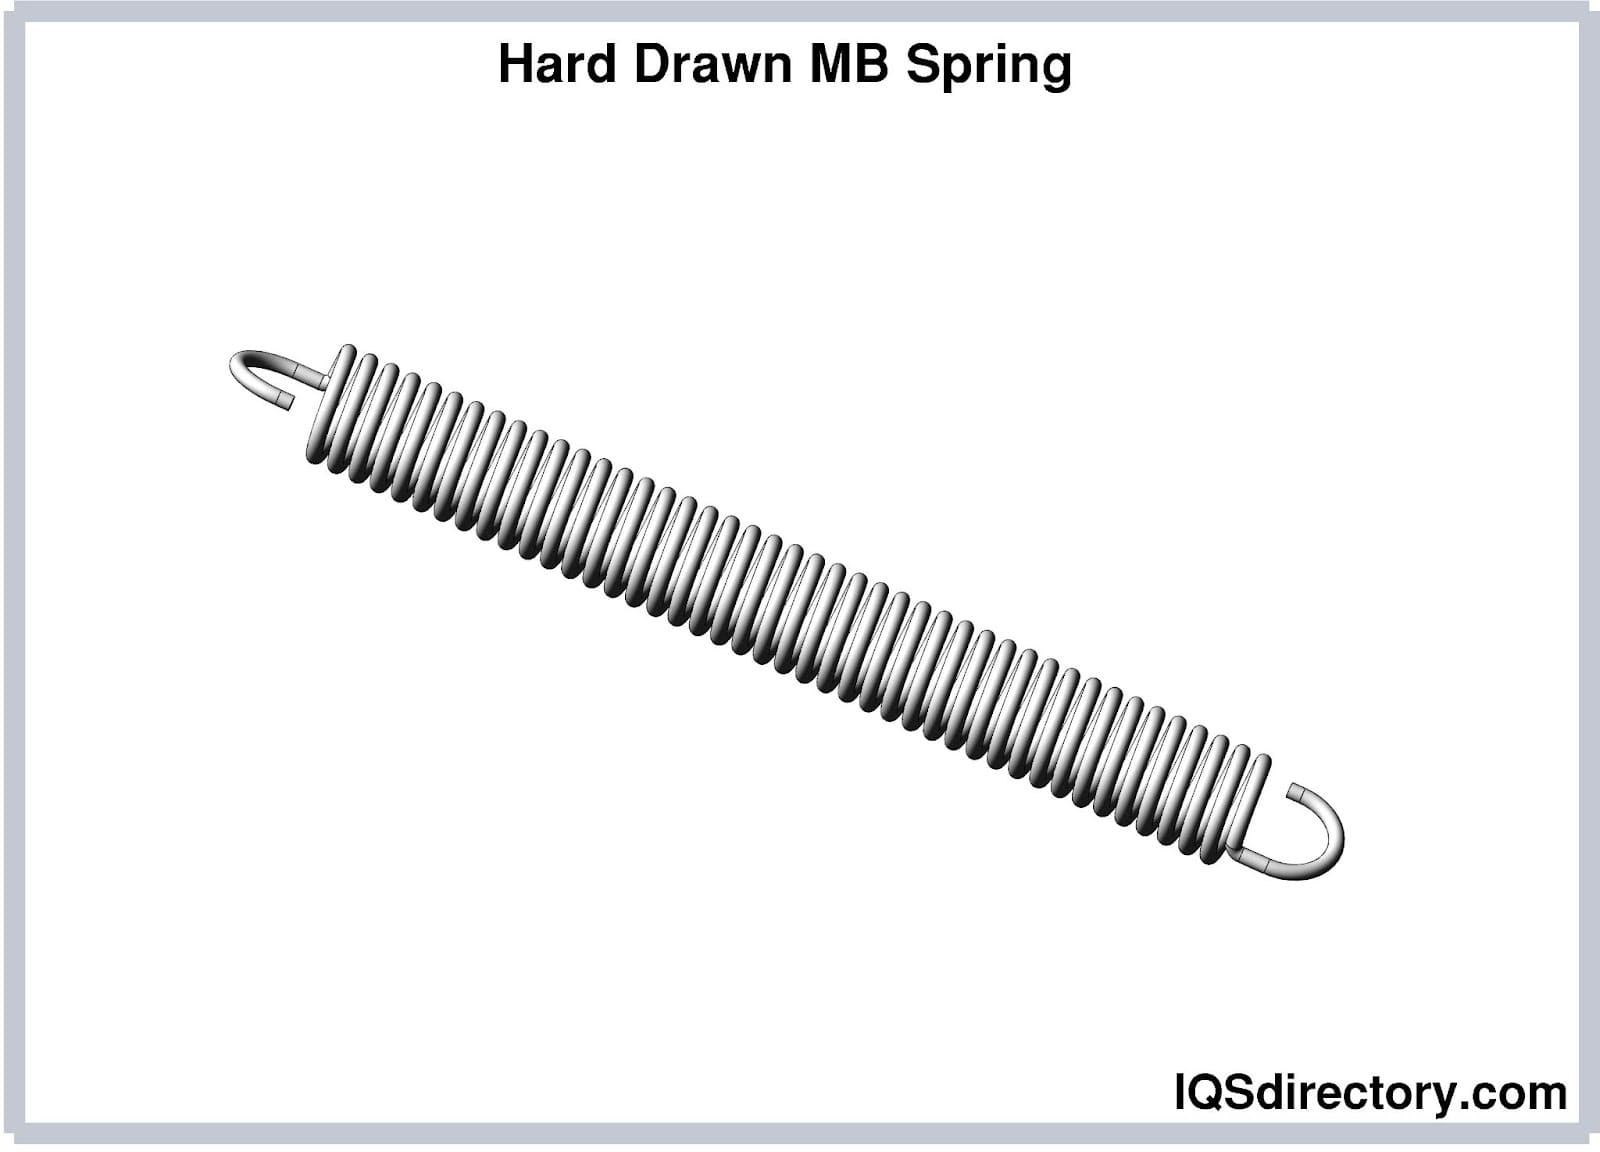 Hard Drawn MB Spring